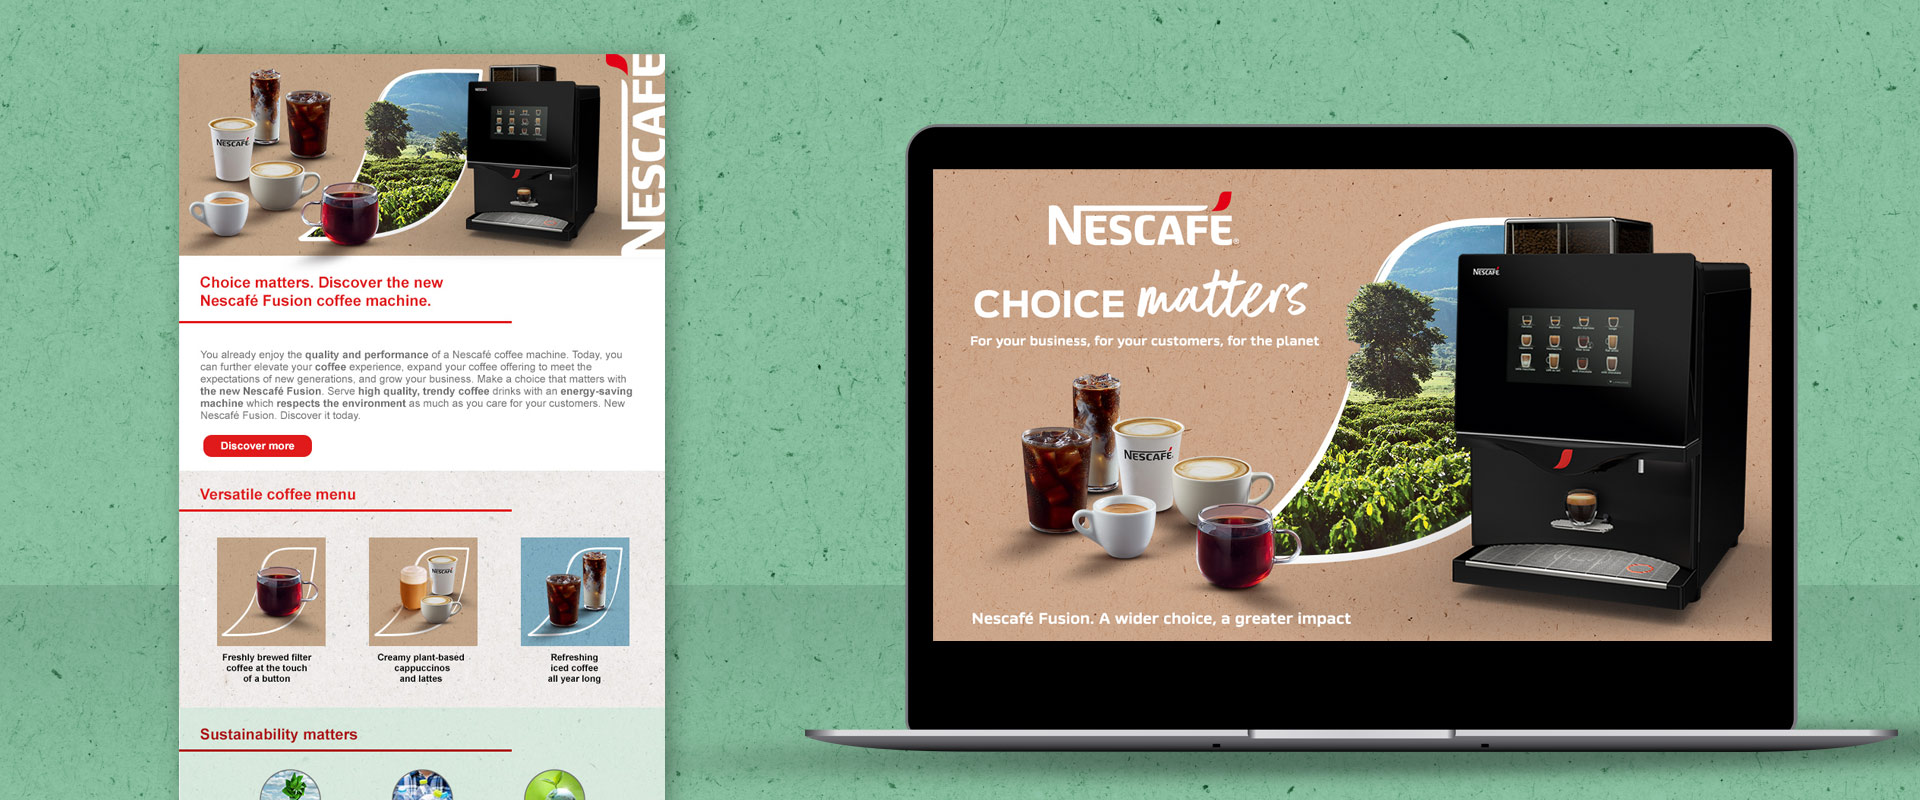 dem mailing and b2b btl video for Nescafé Fusion by Nestlé Professional